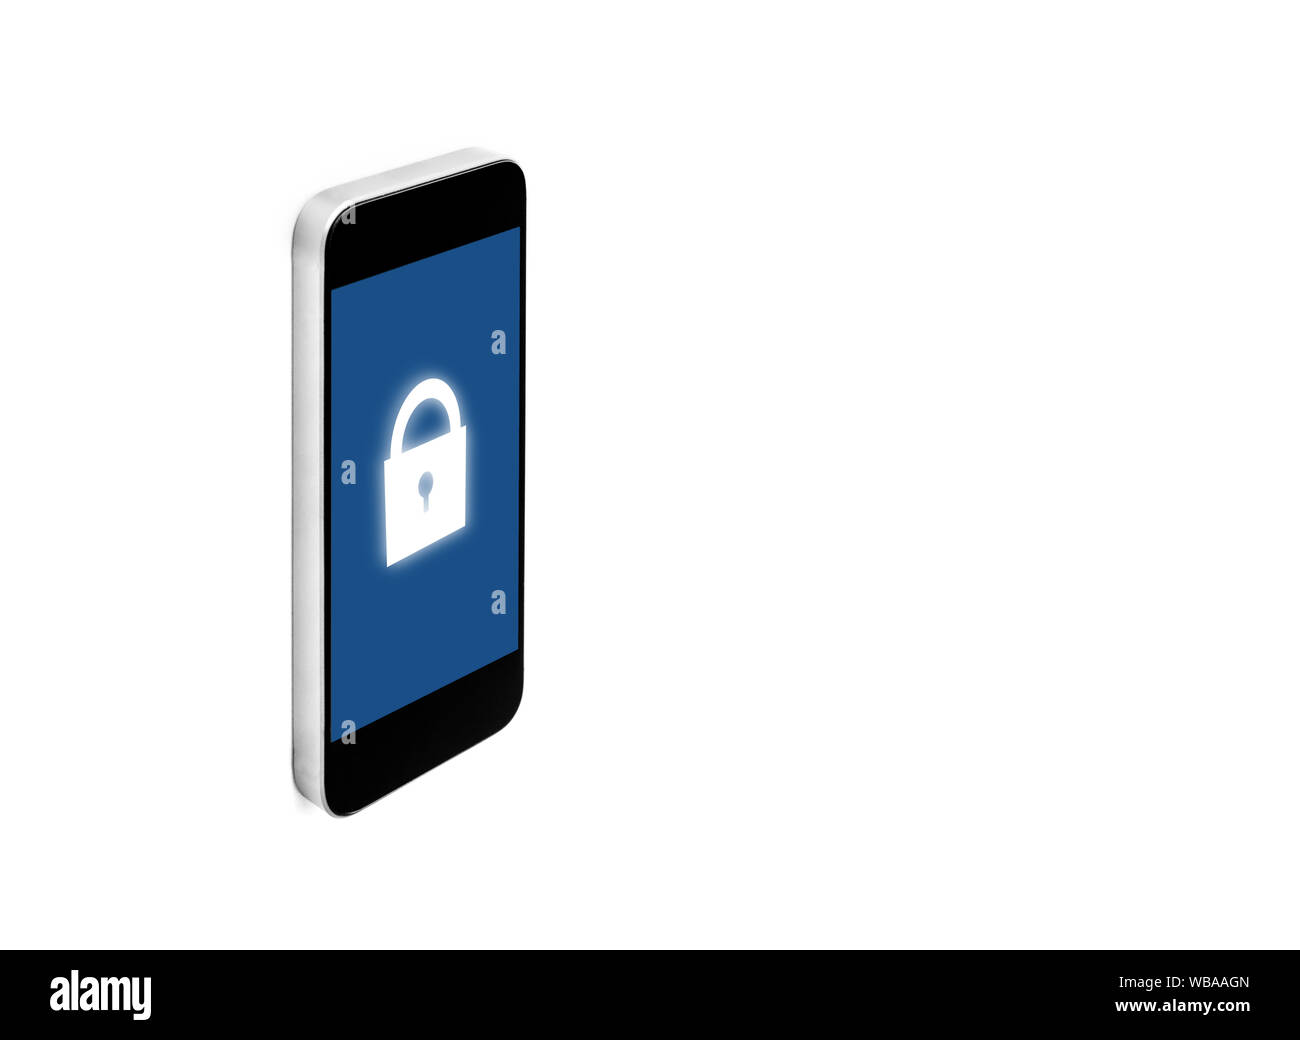 Mobile smart phone, icona a forma di lucchetto sullo schermo, isolato su sfondo bianco Foto Stock